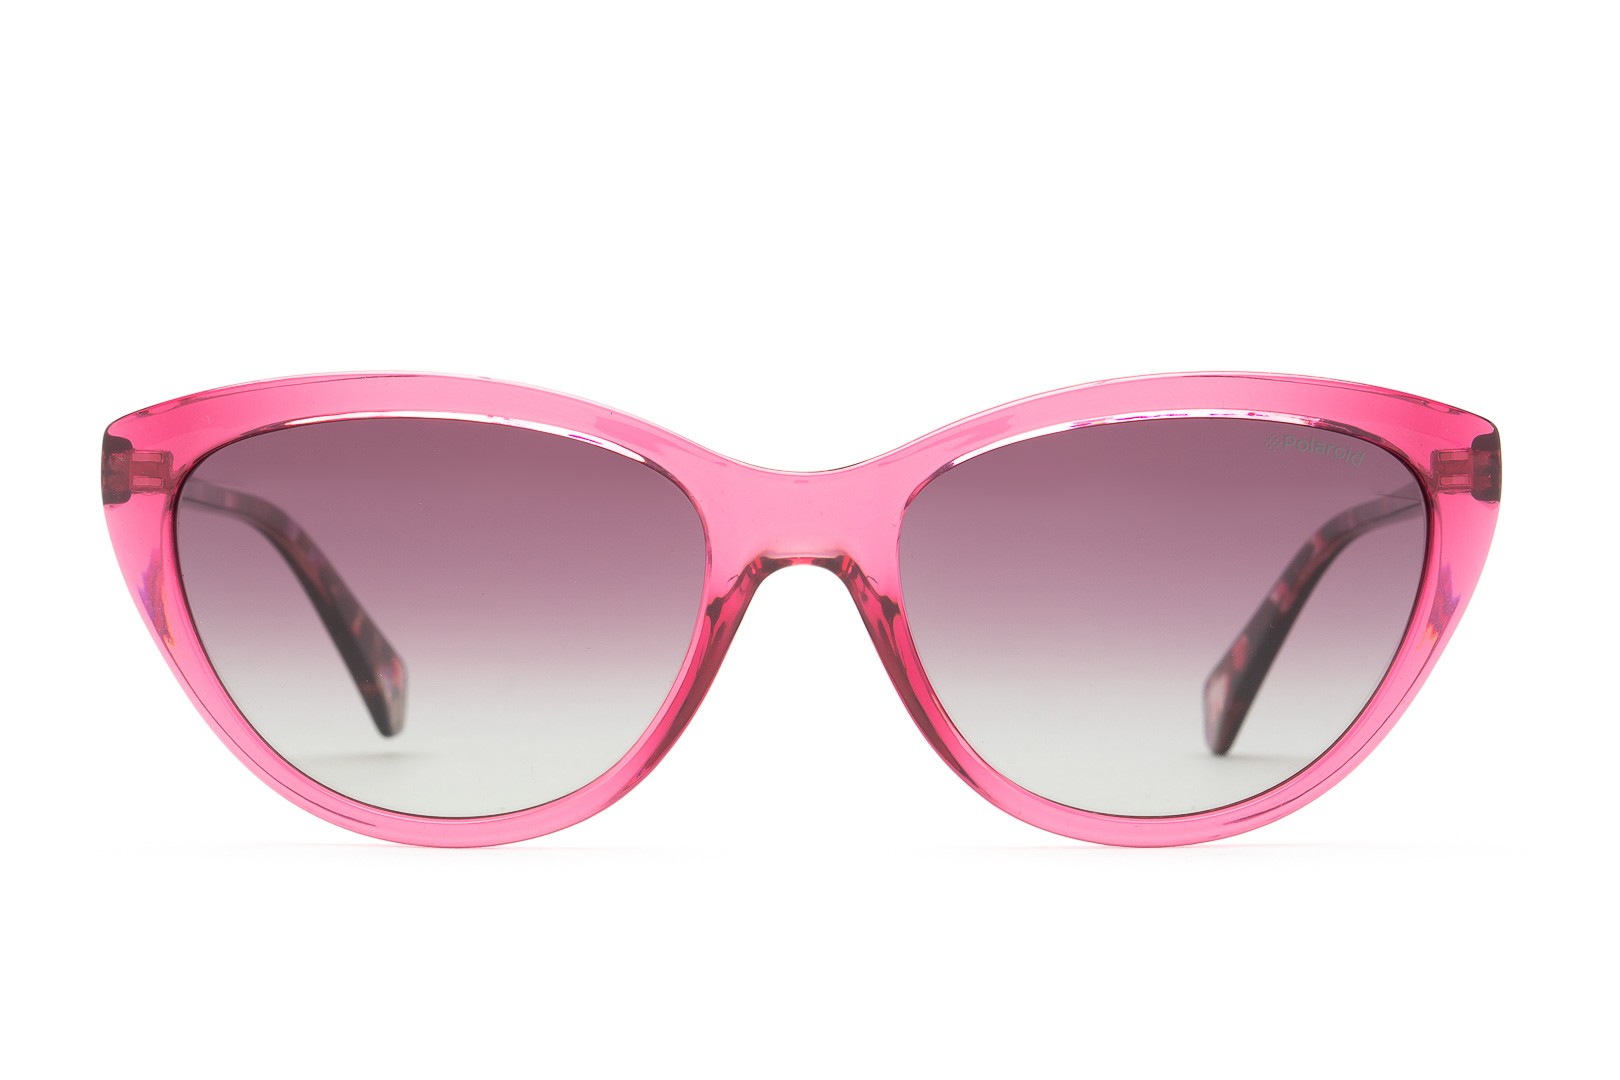 Mujer Accesorios de Gafas de sol de Gafas de Polaroid de color Rosa 